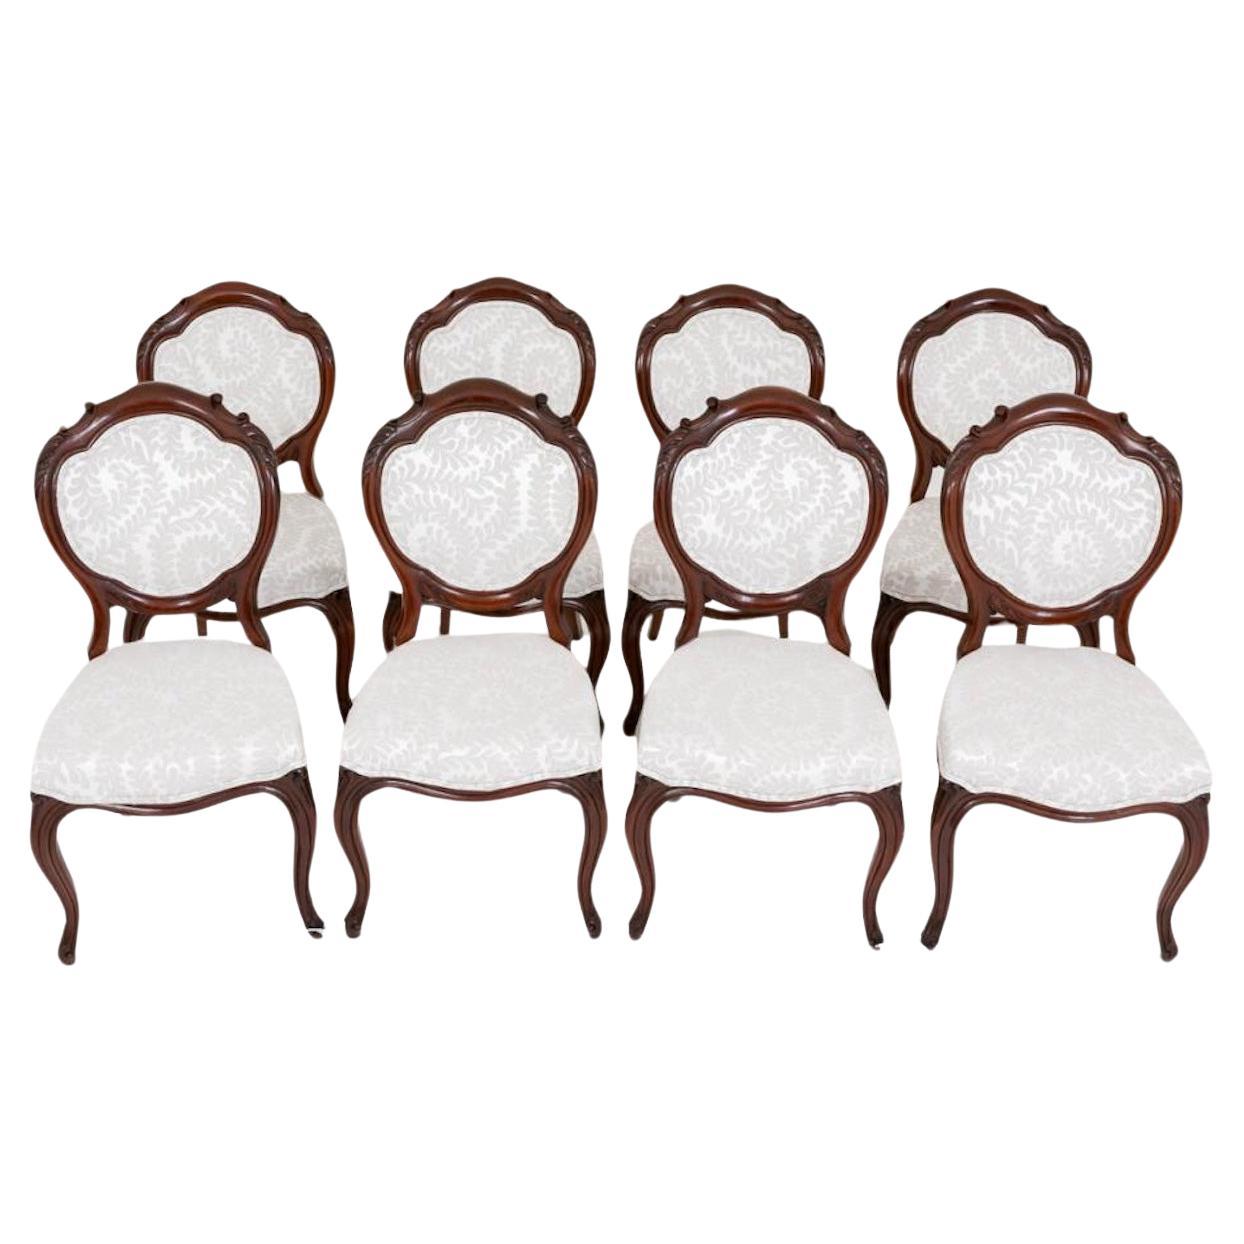 Set viktorianische Esszimmerstühle - Mahagoni 8 Stühle 1860